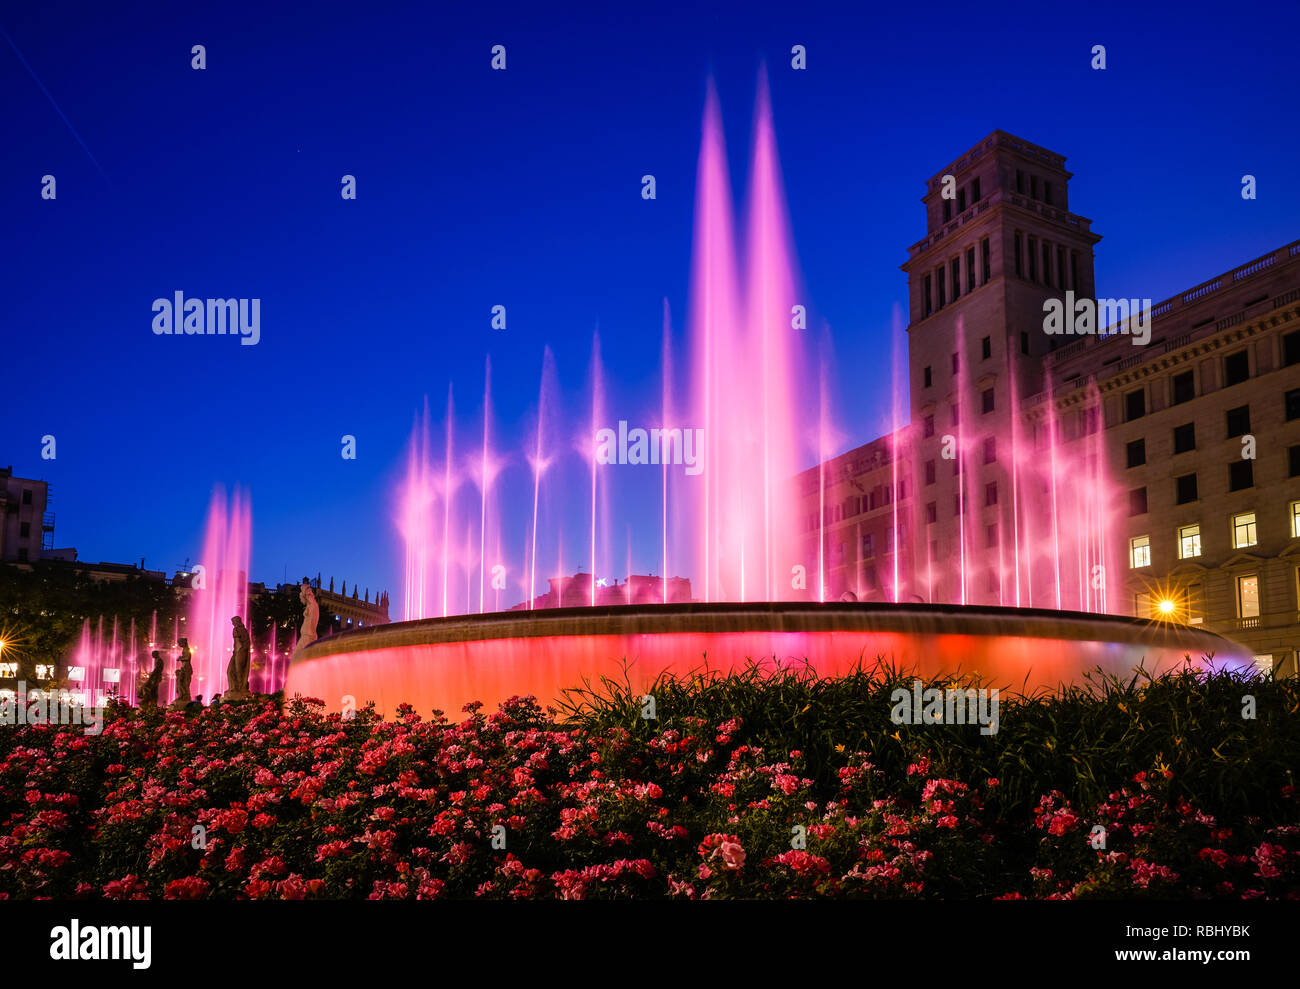 Vue nocturne de la fontaine sur la Place de Catalogne à Barcelone, Espagne Banque D'Images